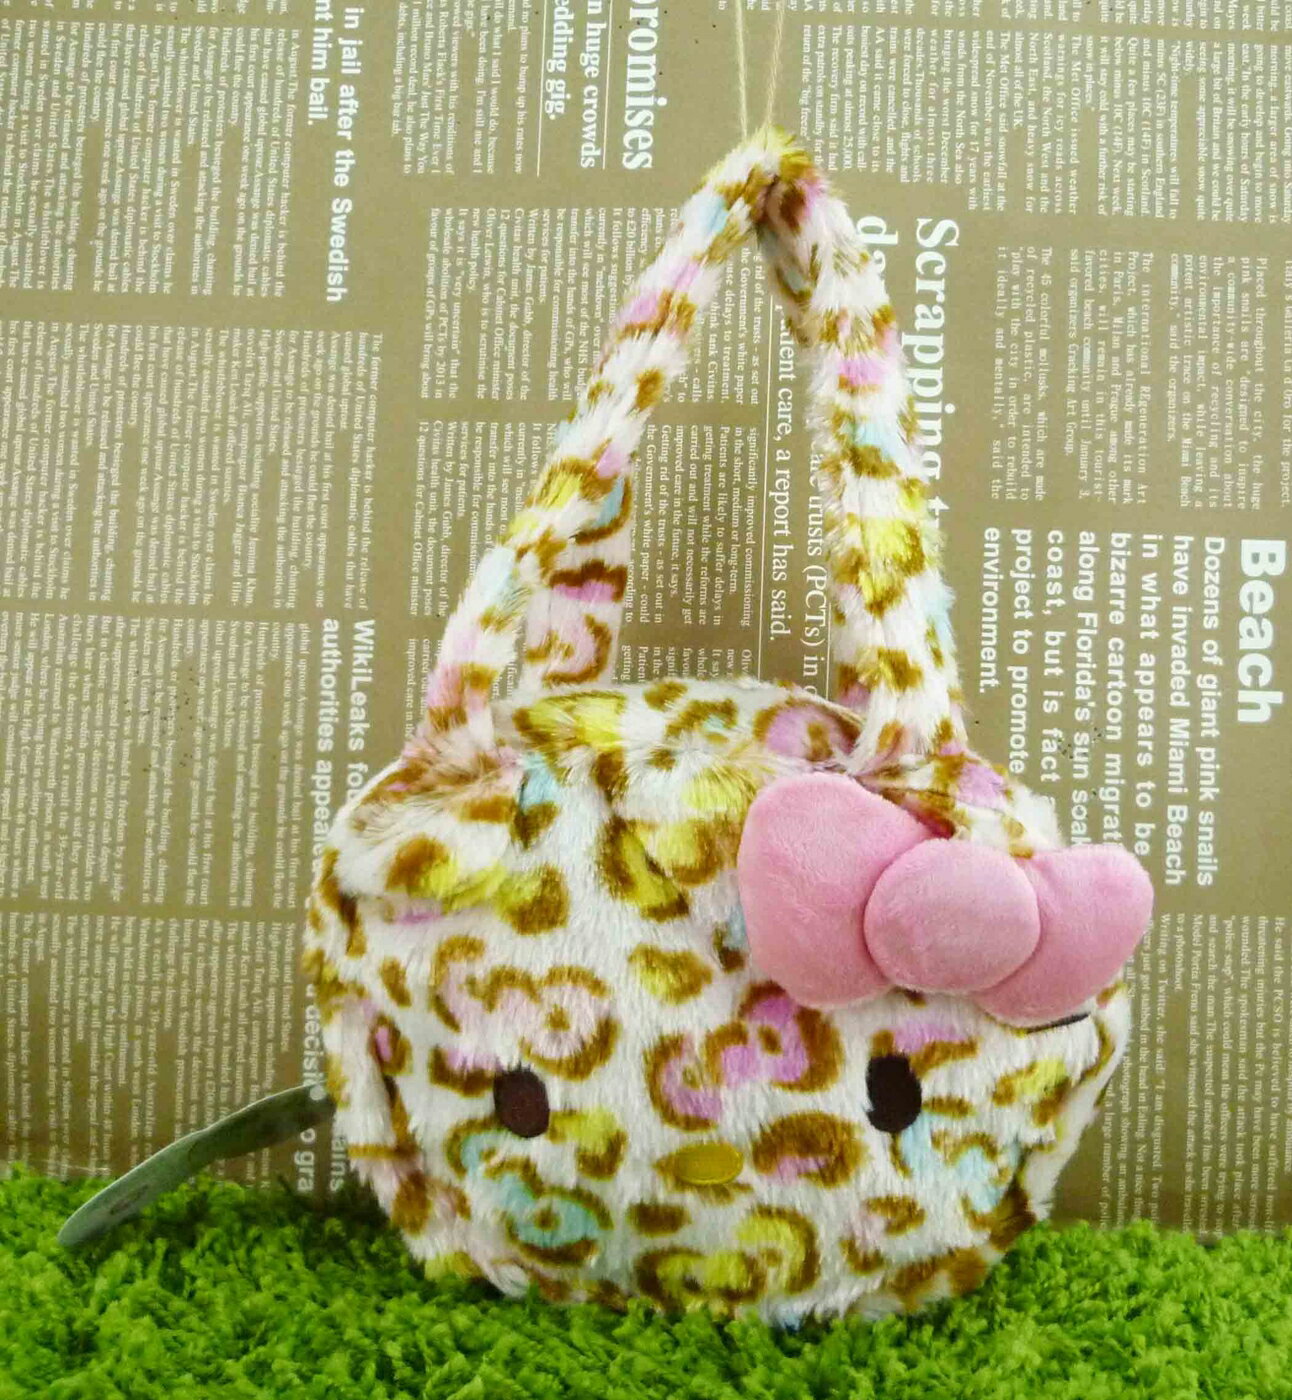 【震撼精品百貨】Hello Kitty 凱蒂貓 三麗鷗 KITTY造型手提包/手拿包-豹紋#34248 震撼日式精品百貨